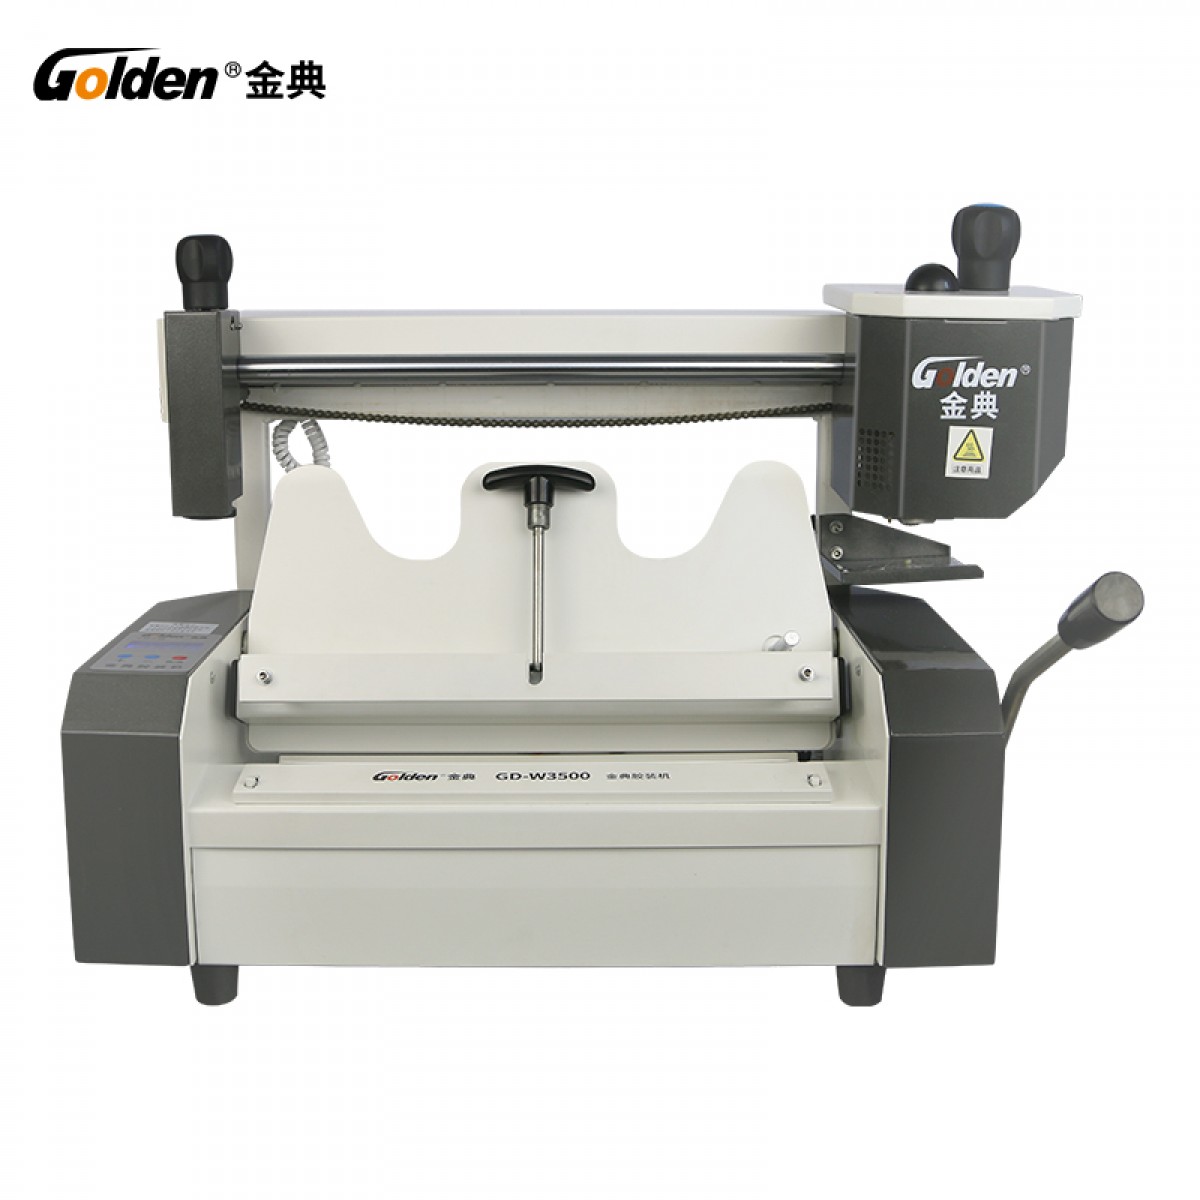 理光pro8110s/8100s/8120se高速数码印刷生产型黑白a3打印复印机